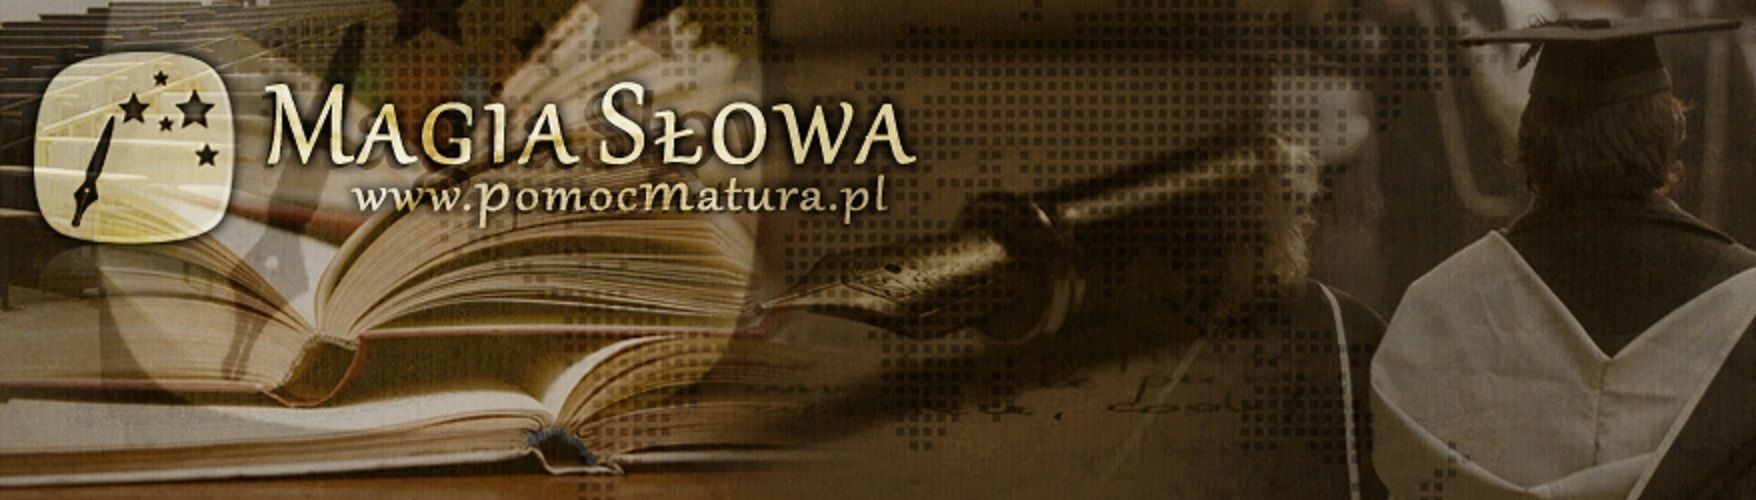 Prace dyplomowe referaty eseje zadania szkolne - ekspres bez zal. legalna firma Toruń - Zdjęcie 1